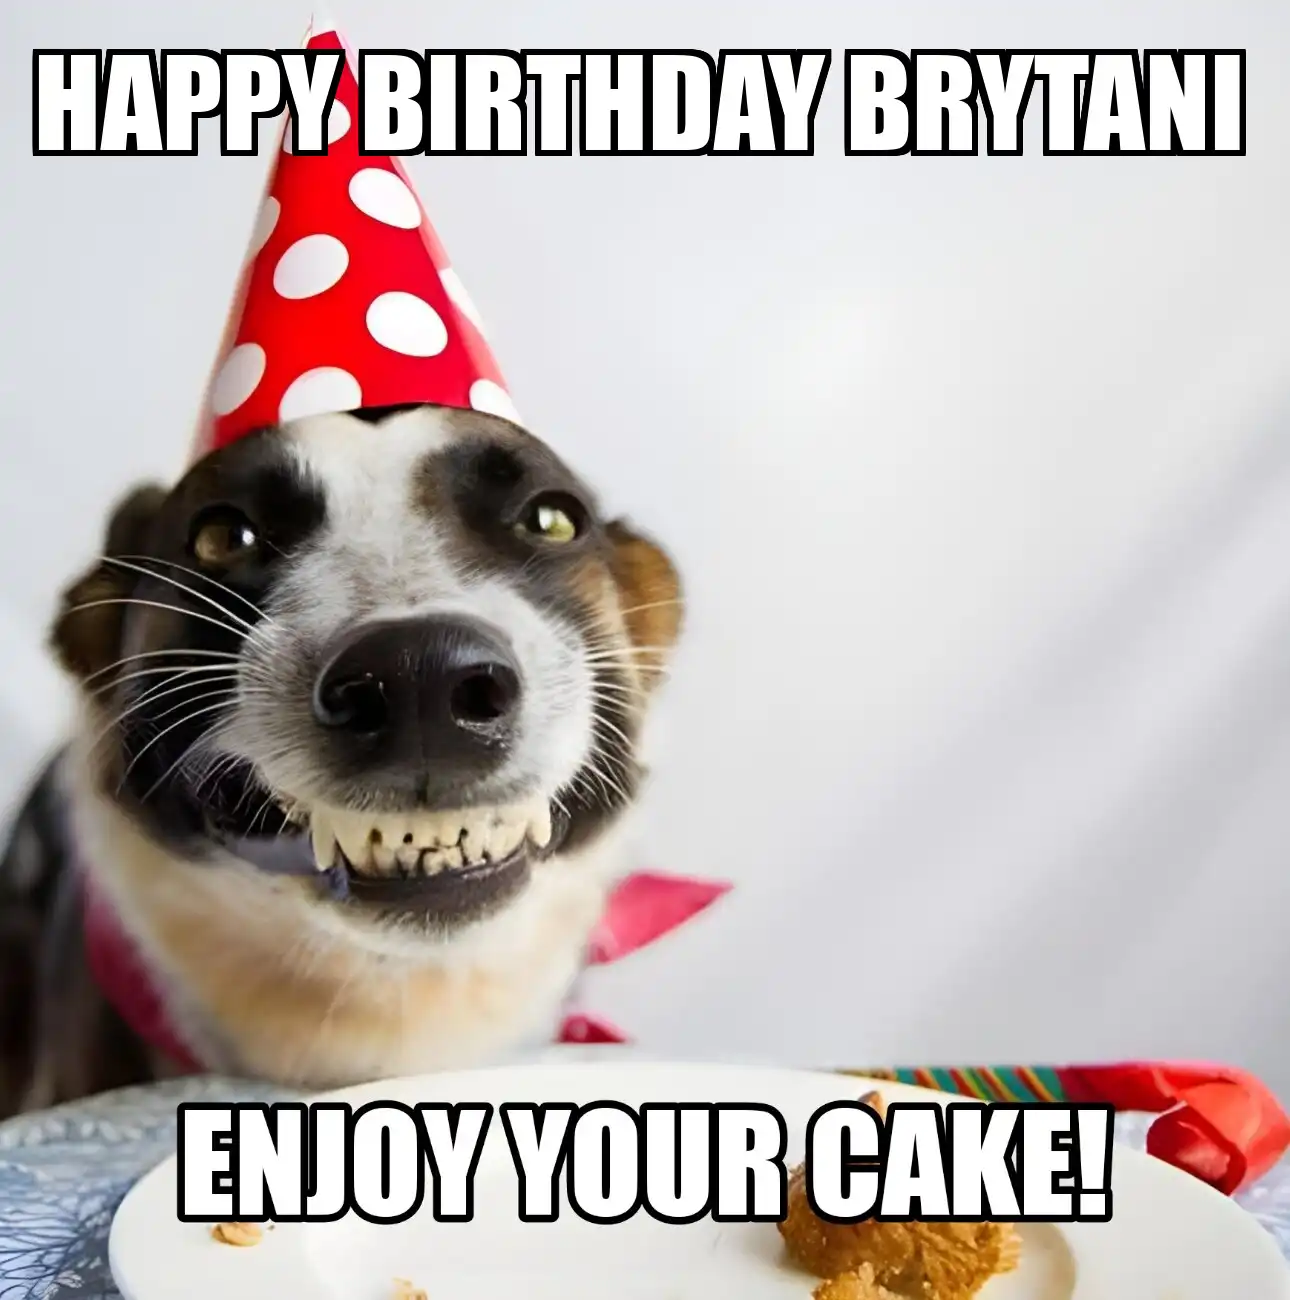 Happy Birthday Brytani Enjoy Your Cake Dog Meme